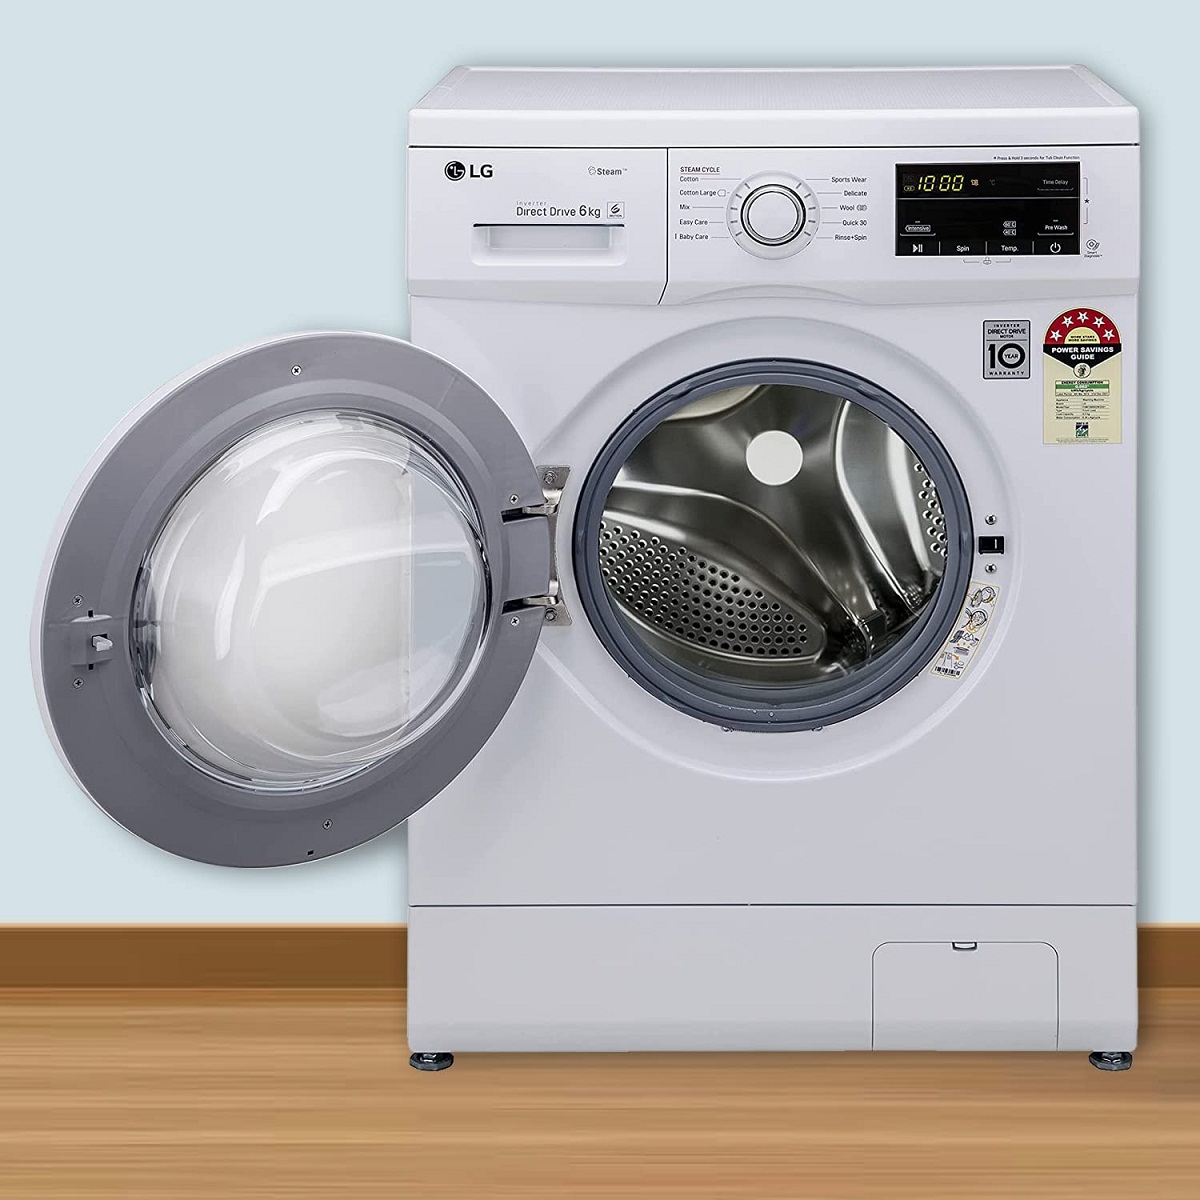 Best 5 Star Washing Machine in India